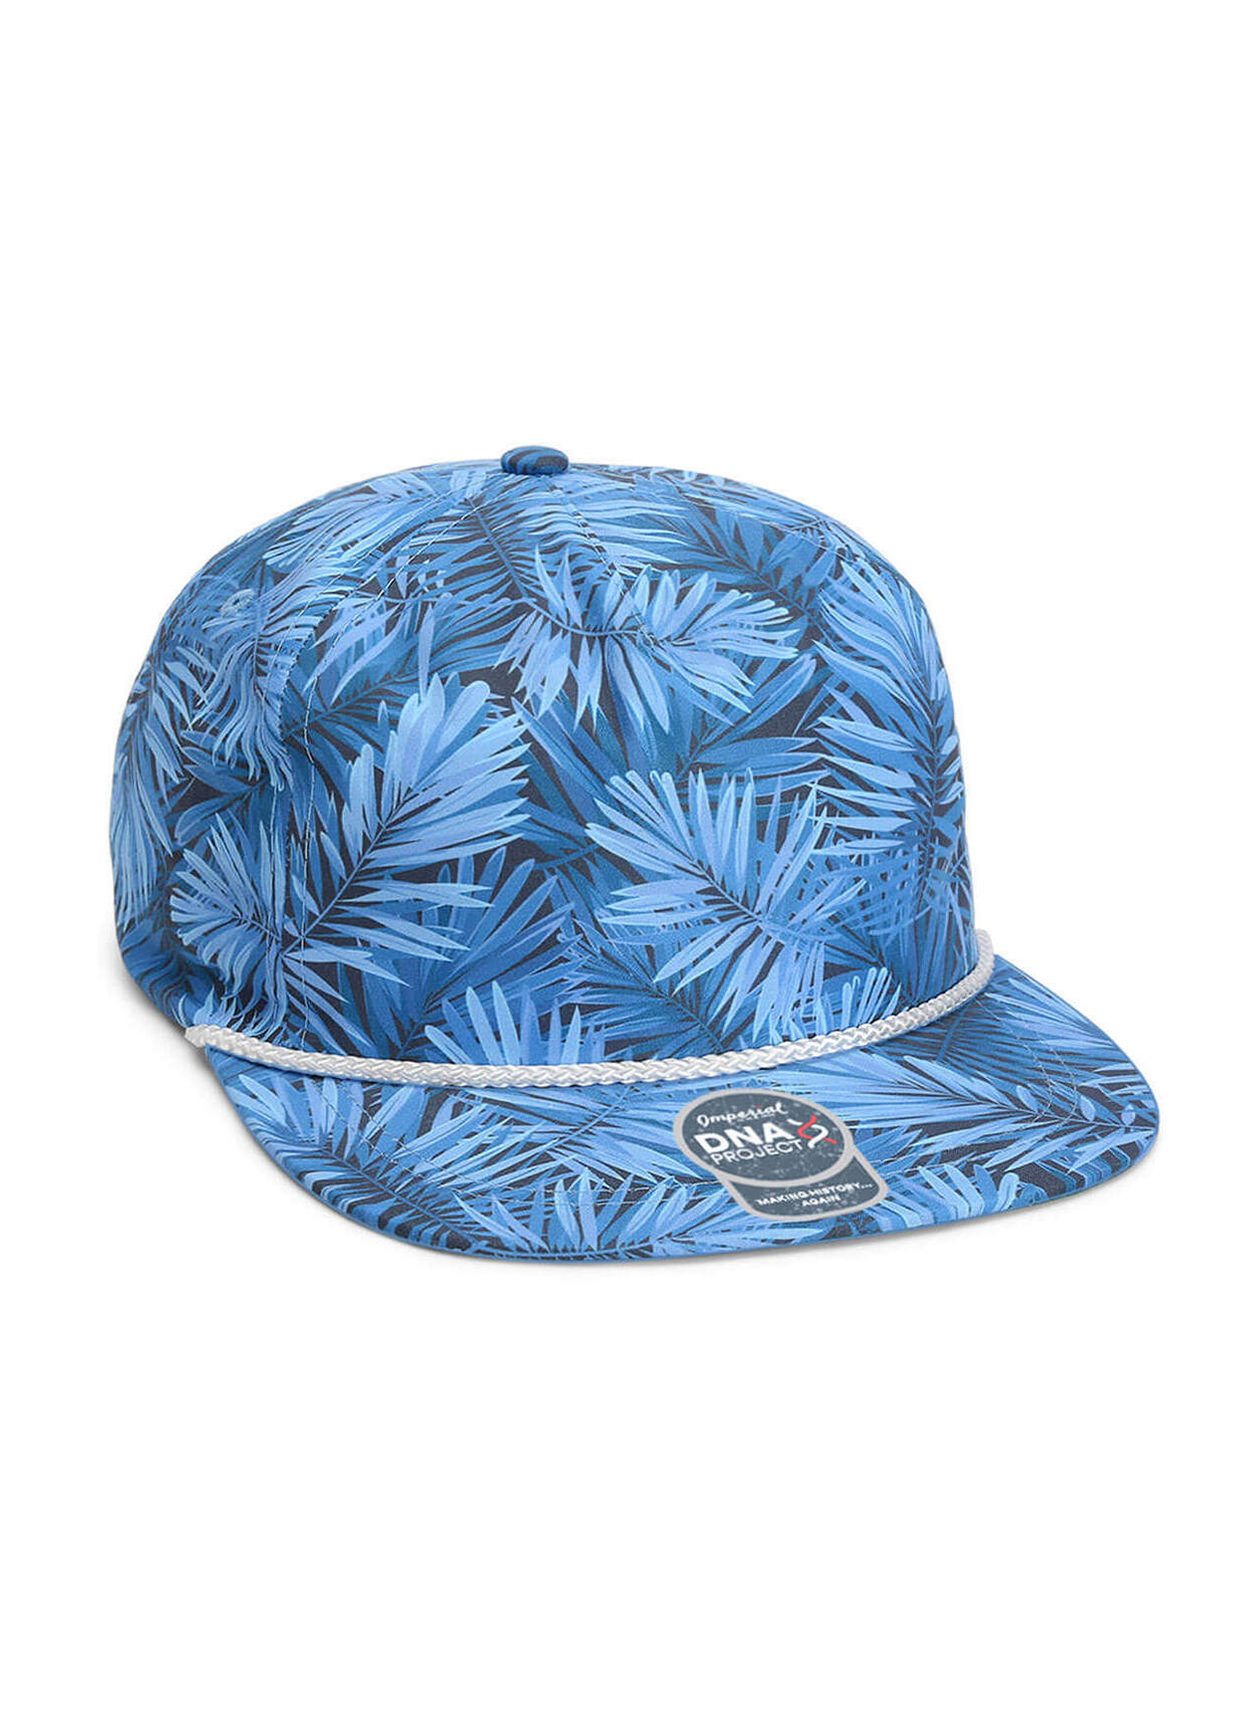 Imperial Blue Hawaiian The Aloha Rope Hat